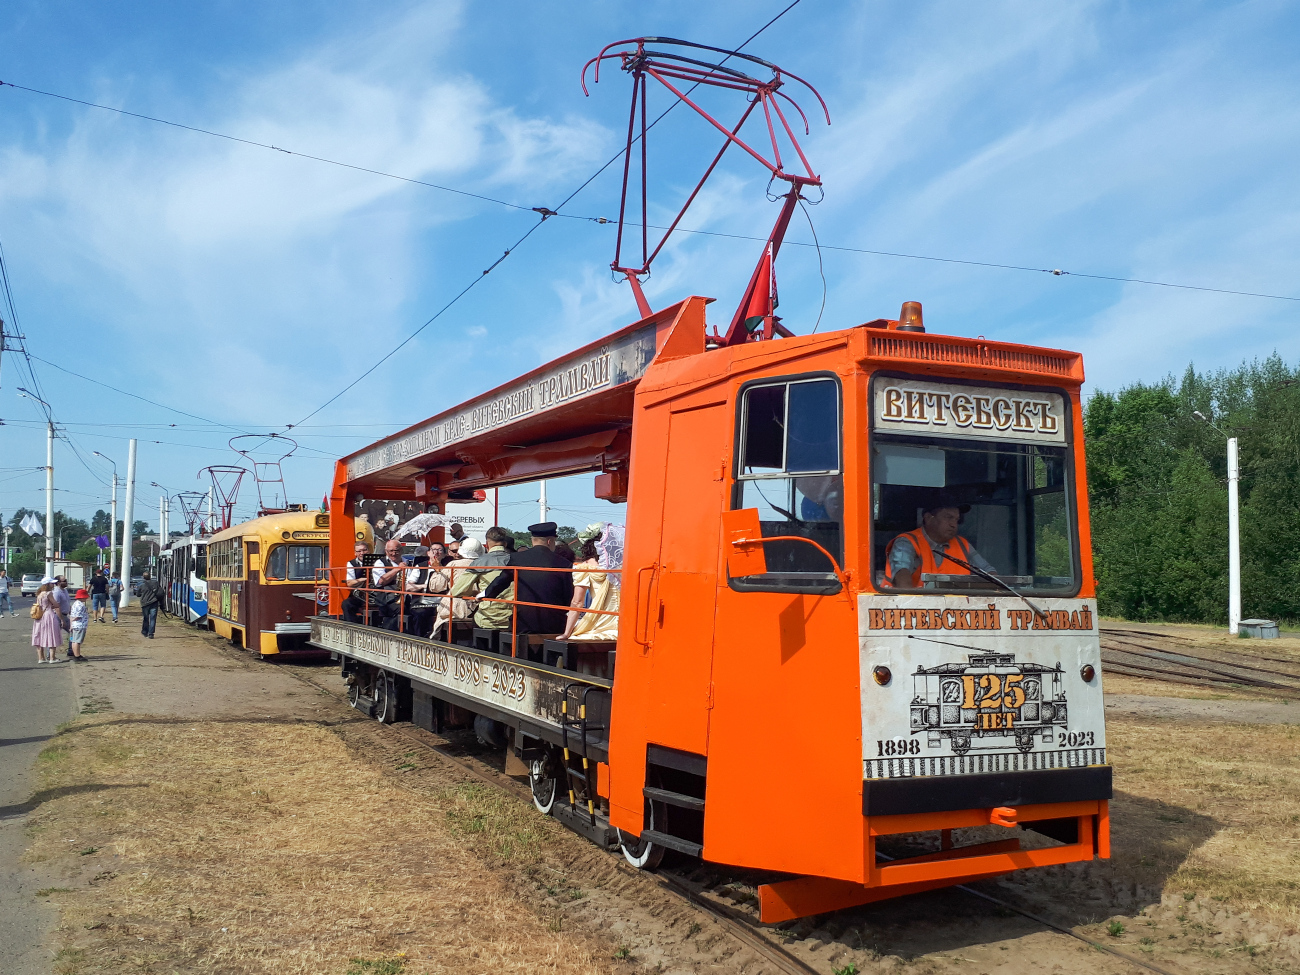 Vitebsk, TK-28A N°. РТ-2; Vitebsk — Museum wagons; Vitebsk — Parade in honor of the 125th anniversary of the tram in Vitebsk